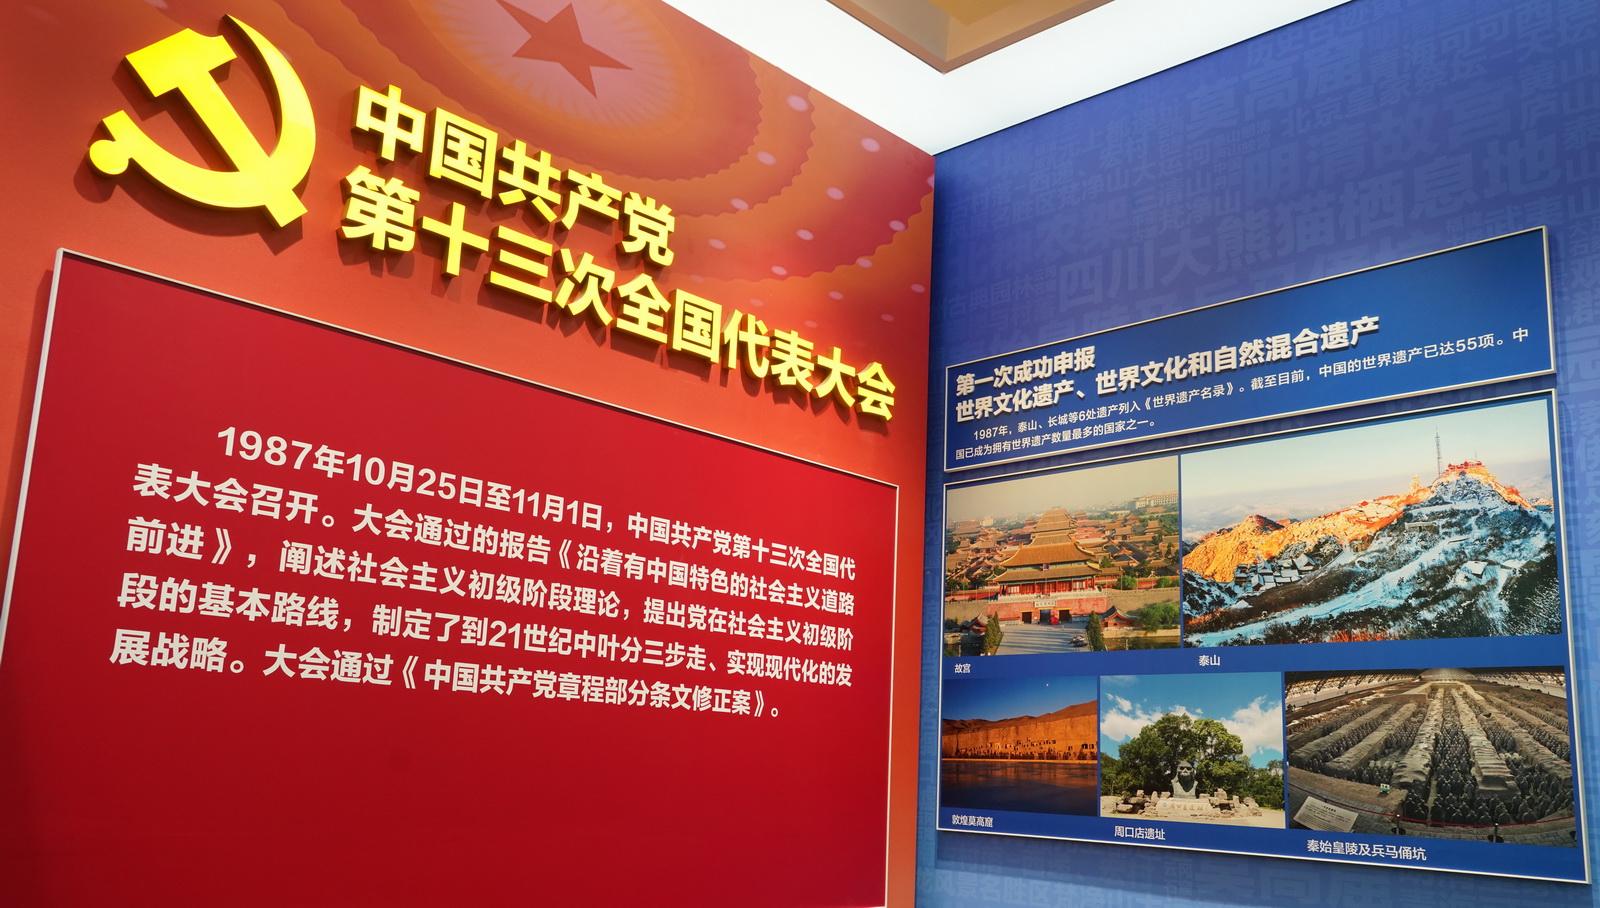 中国共产党第十三次全国代表大会;第一次成功申报世界文化遗产,世界